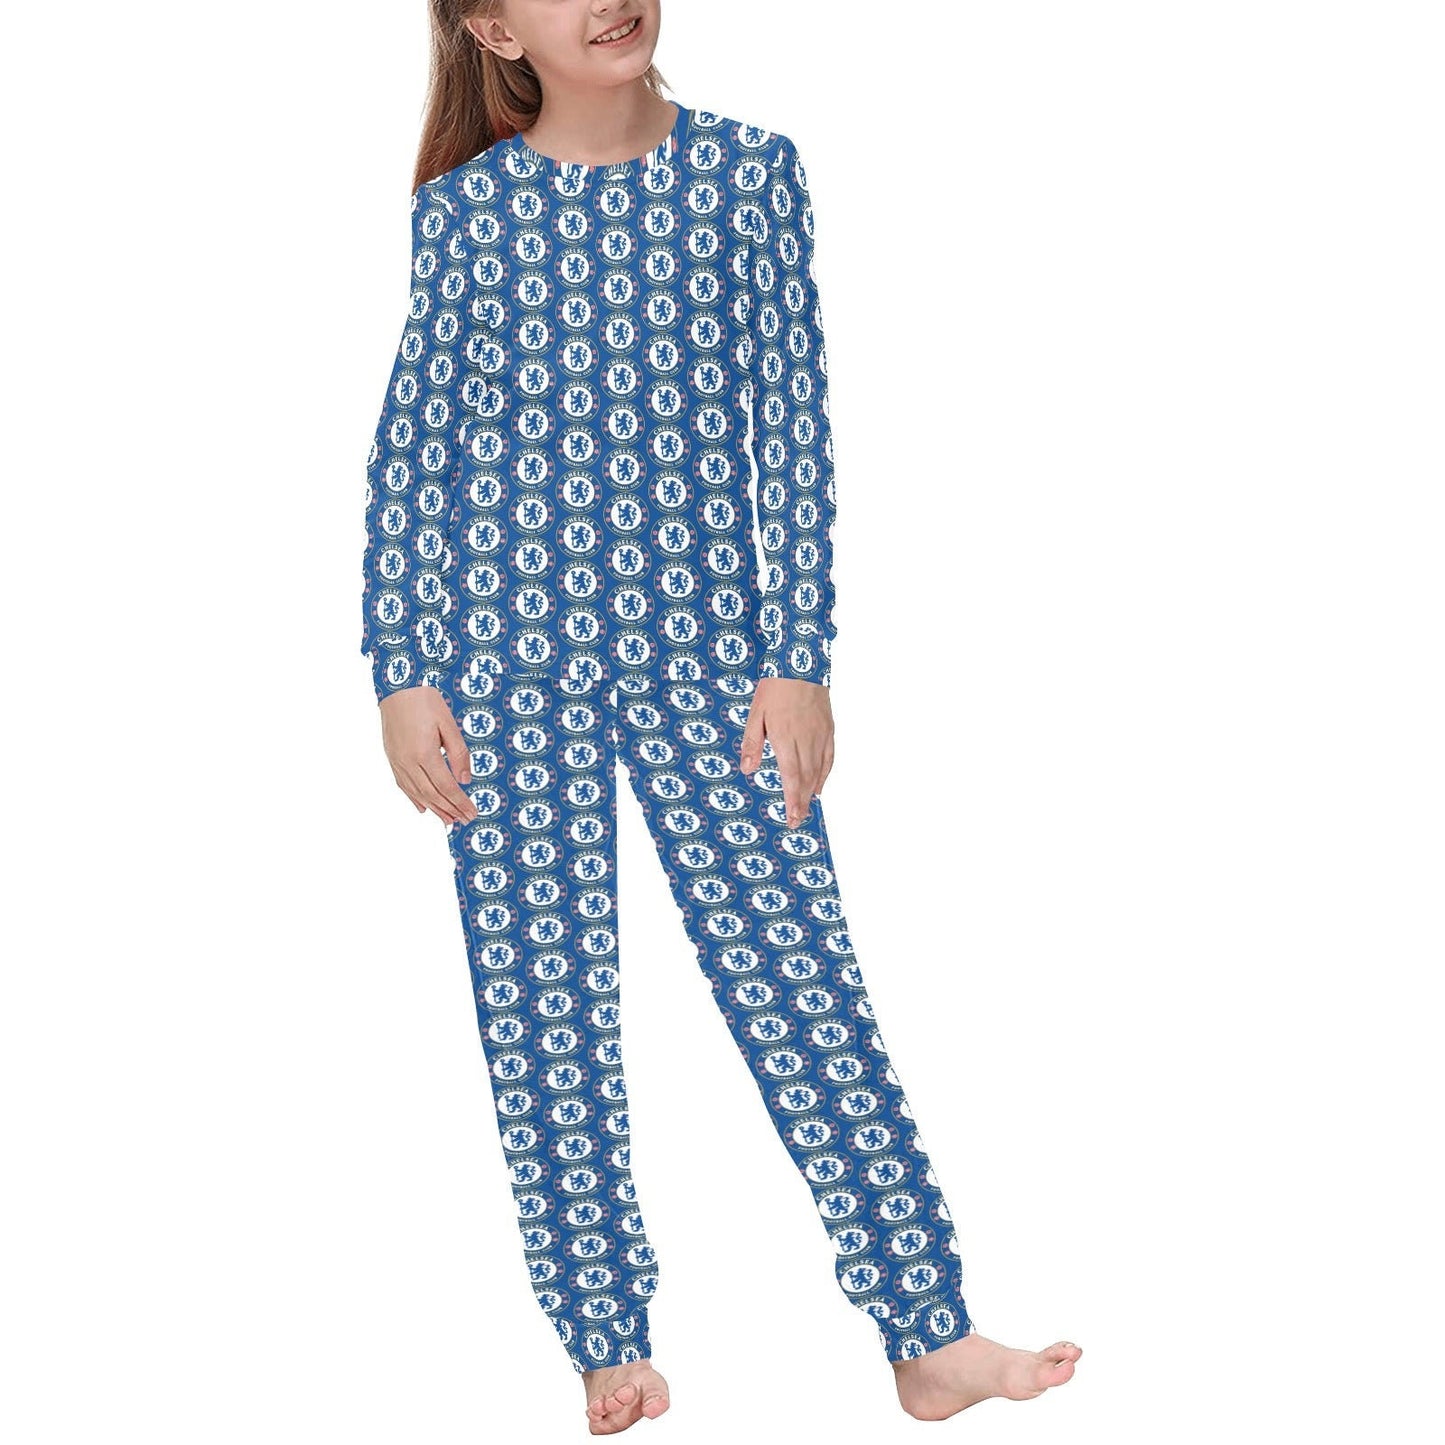 Custom Chelsea Print • Kids Soccer Pajamas • Premier League Soccer • Soccer Kid Gift